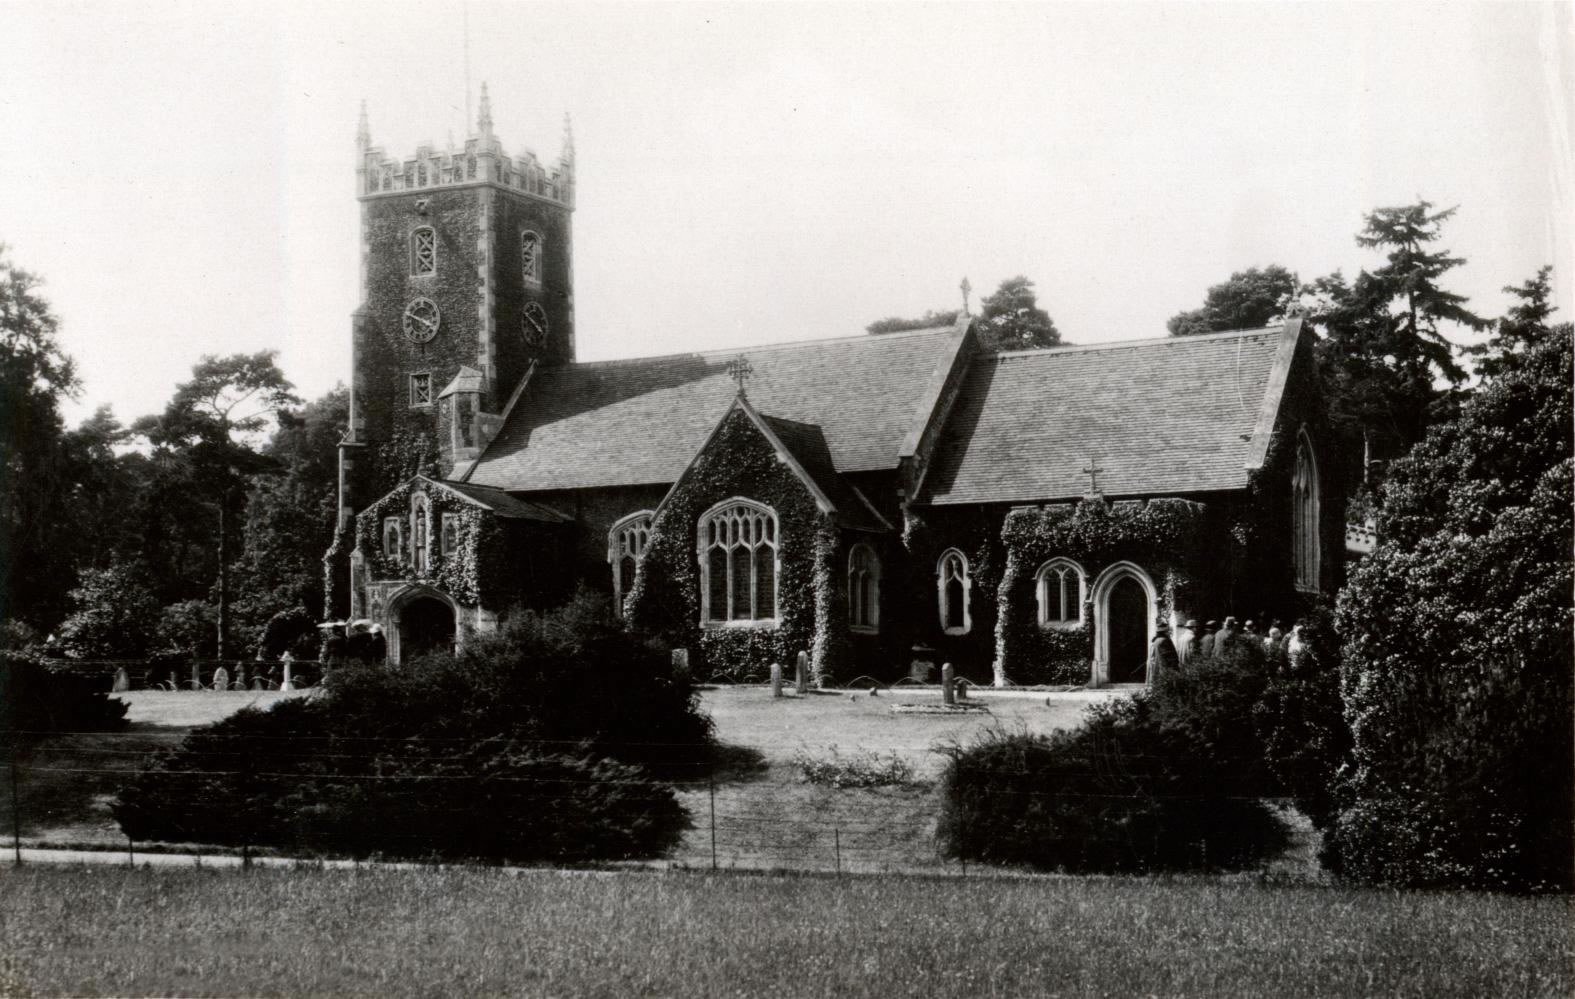 Sandringham Church, Norfolk from TheGenealogist's Image Archive